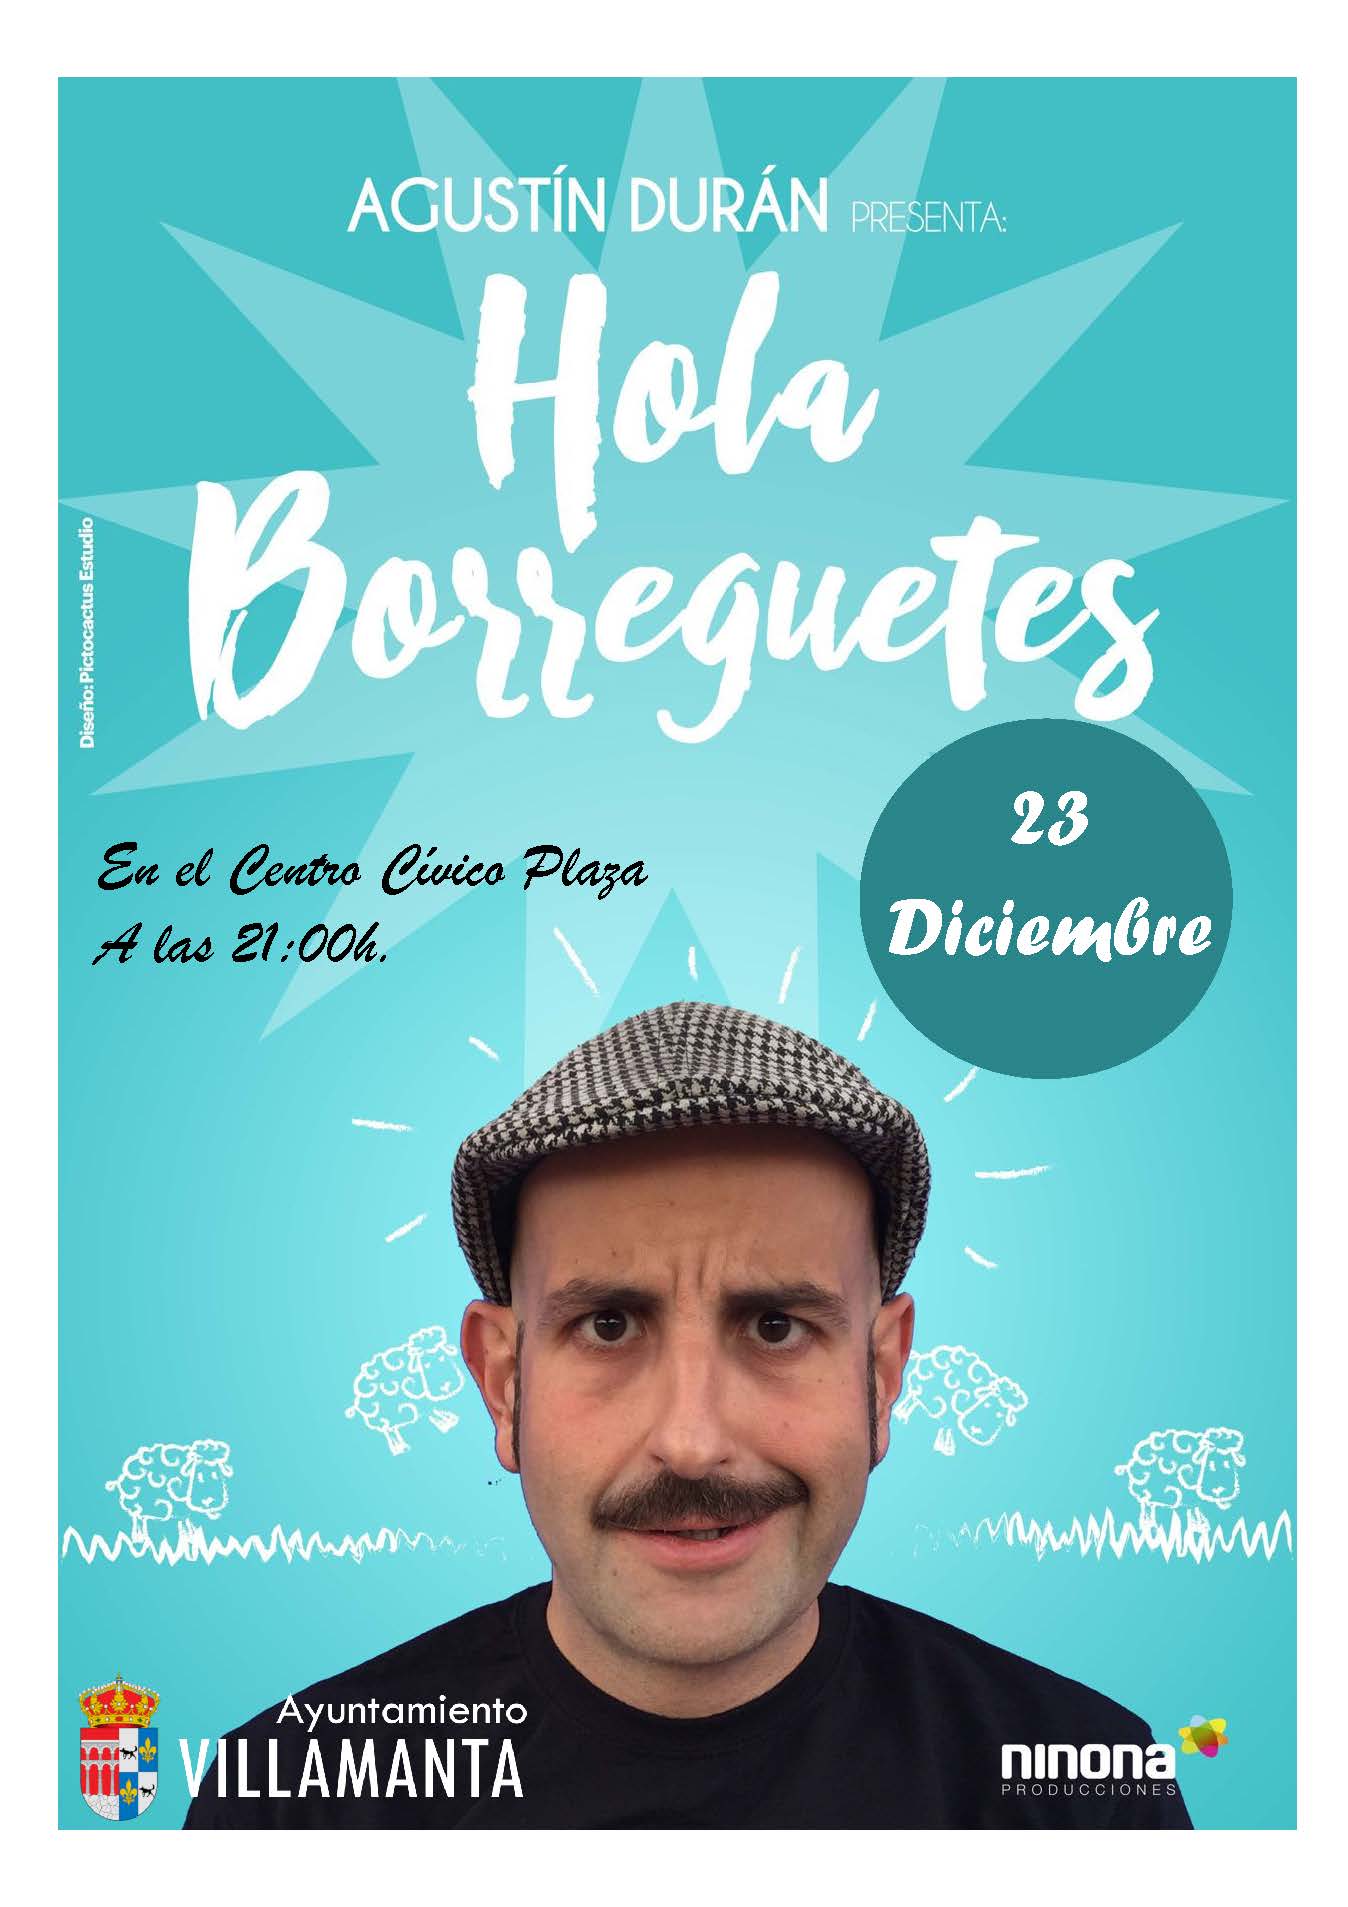 Hola Borreguetes- Agustín Durán